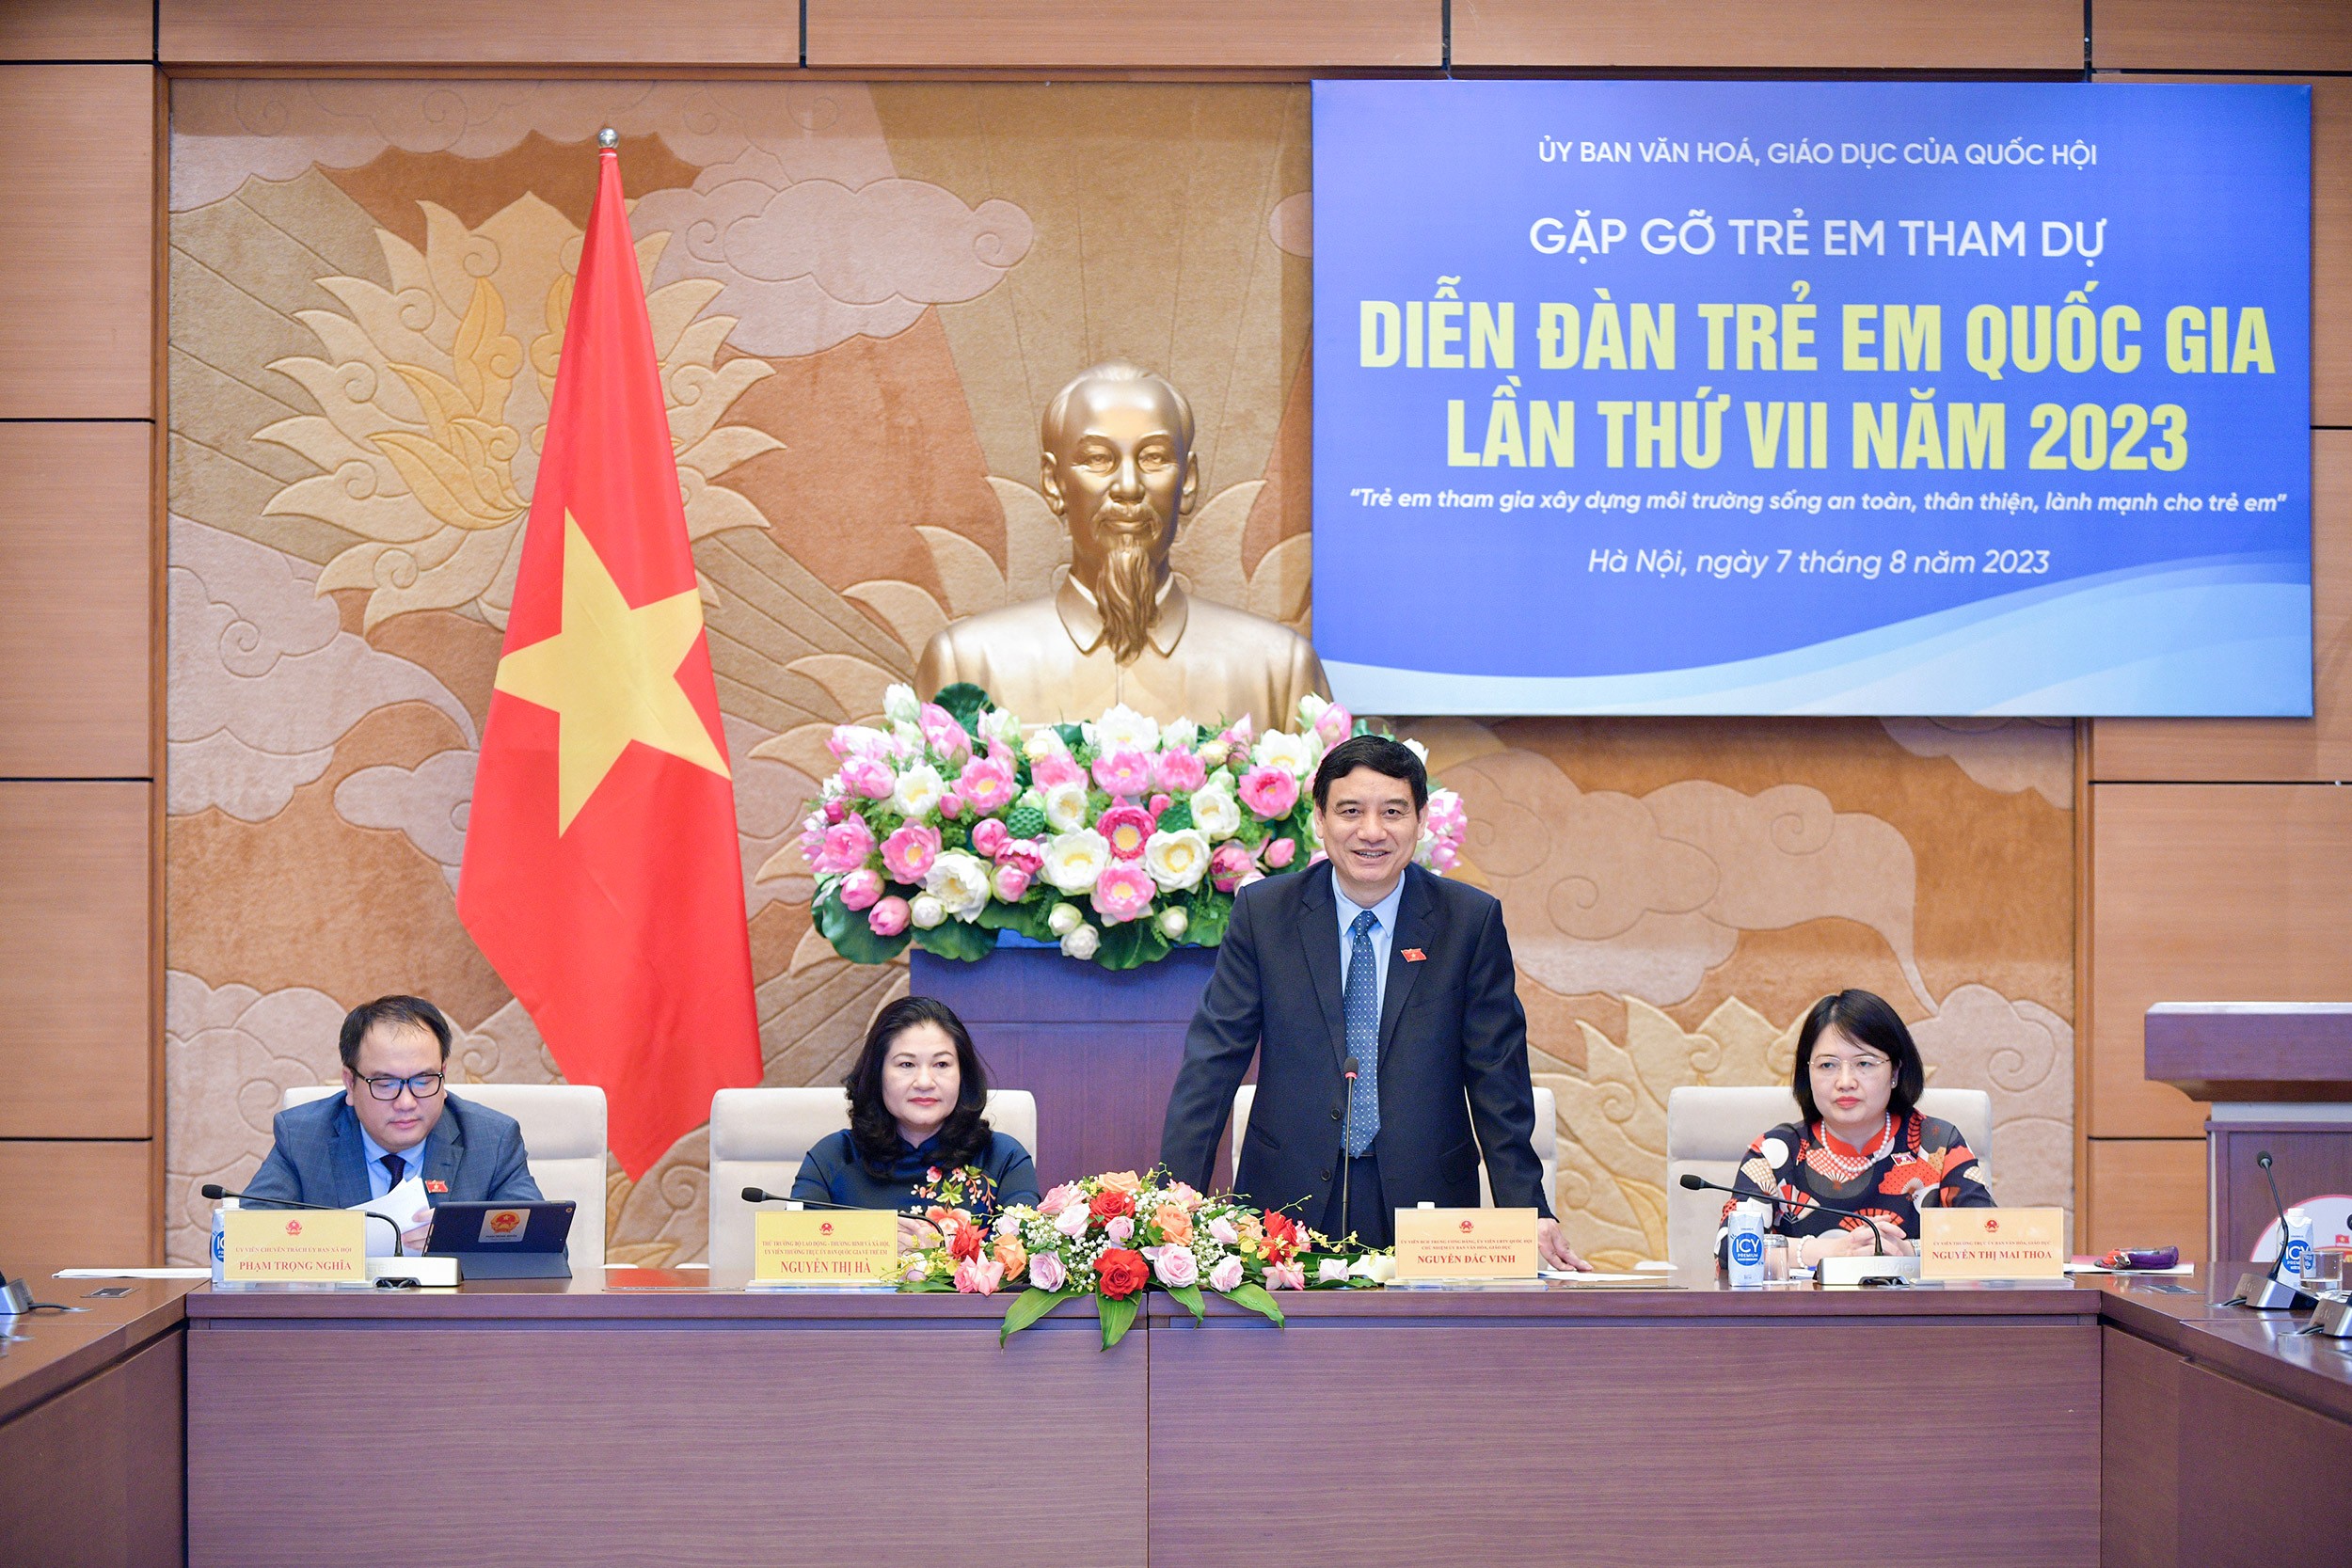 Chủ nhiệm Ủy ban Văn hóa, Giáo dục Nguyễn Đắc Vinh phát biểu tại buổi gặp gỡ (Ảnh: quochoi.vn).